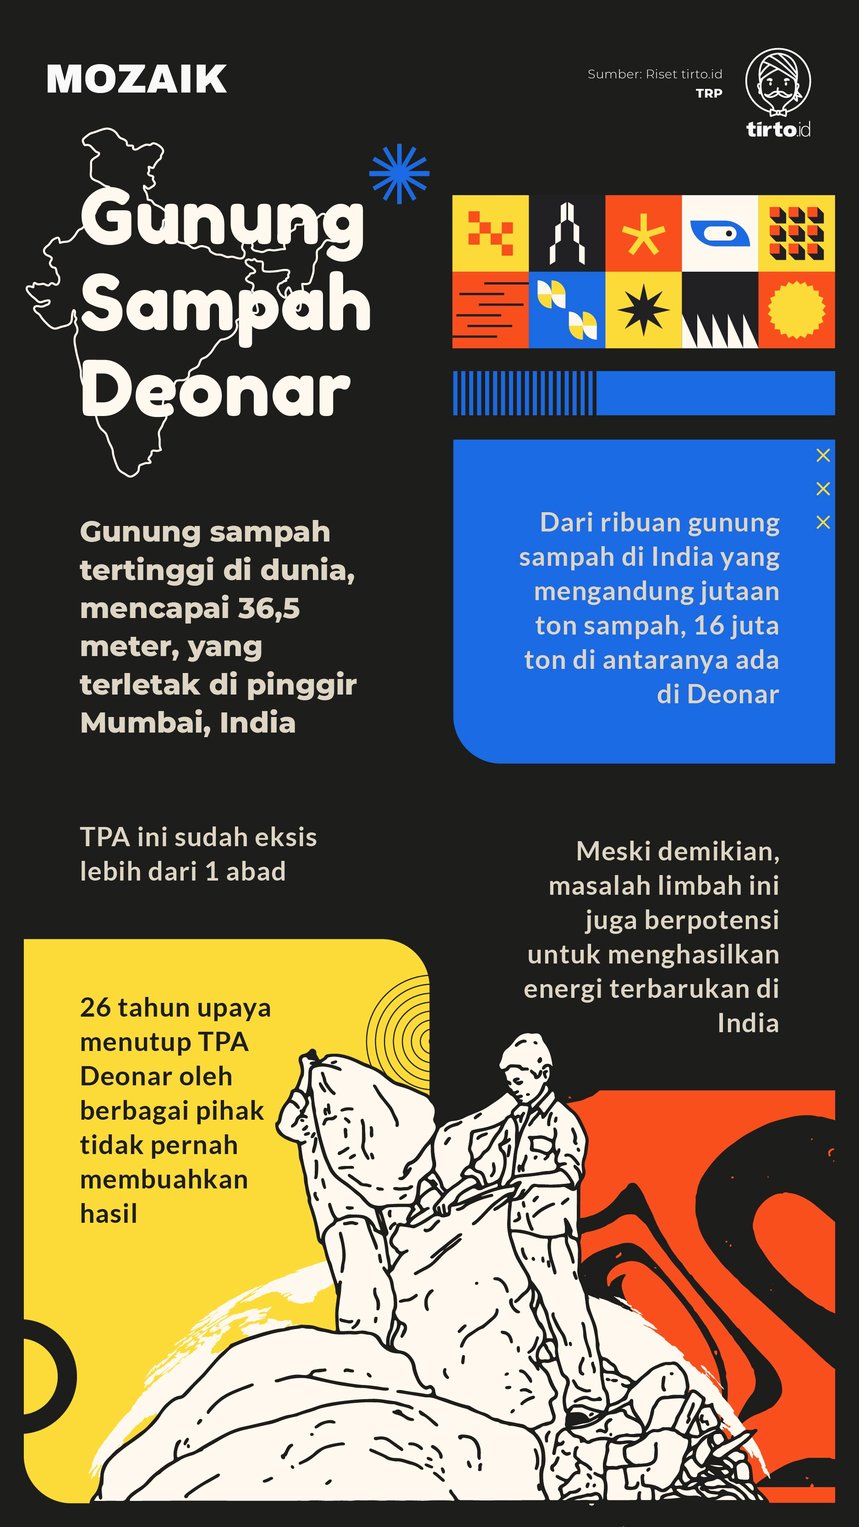 Infografik Mozaik Gunung Sampah Deonar